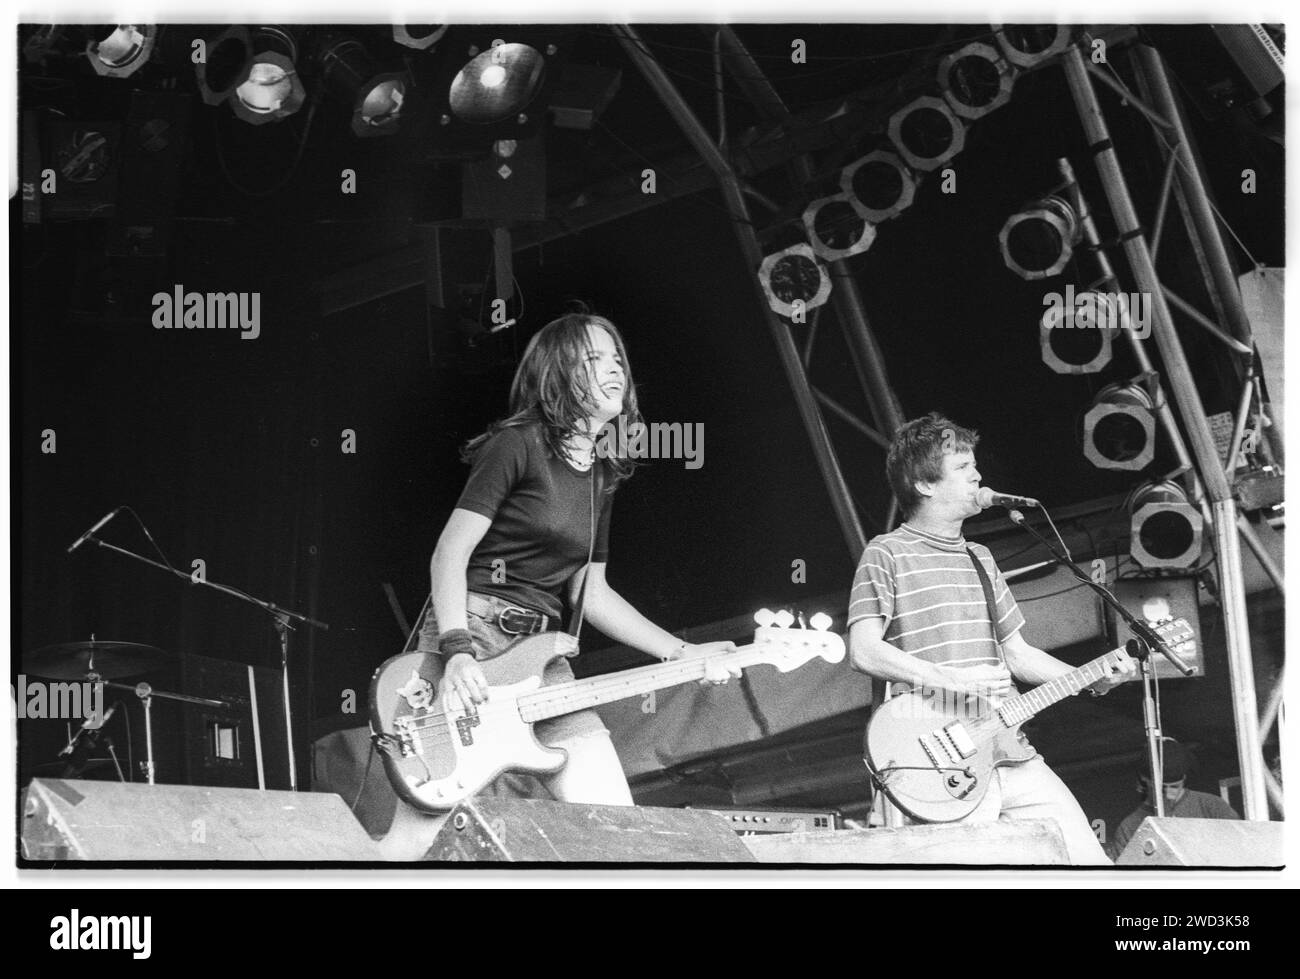 Laura Ballance et Mac McCaughan des légendes indiennes américaines Superchunk sur la Pyramid Stage au Glastonbury Festival, Pilton, Angleterre, vendredi 25 1993 juin. Photographie : ROB WATKINS. INFOS SUR LE GROUPE : Superchunk, formé en 1989, est un groupe de rock indépendant originaire de Chapel Hill, en Caroline du Nord. Connu pour son énergique et mélodique infusé punk, le groupe, dirigé par Mac McCaughan, a été une force constante et influente dans le paysage de la musique alternative. Banque D'Images